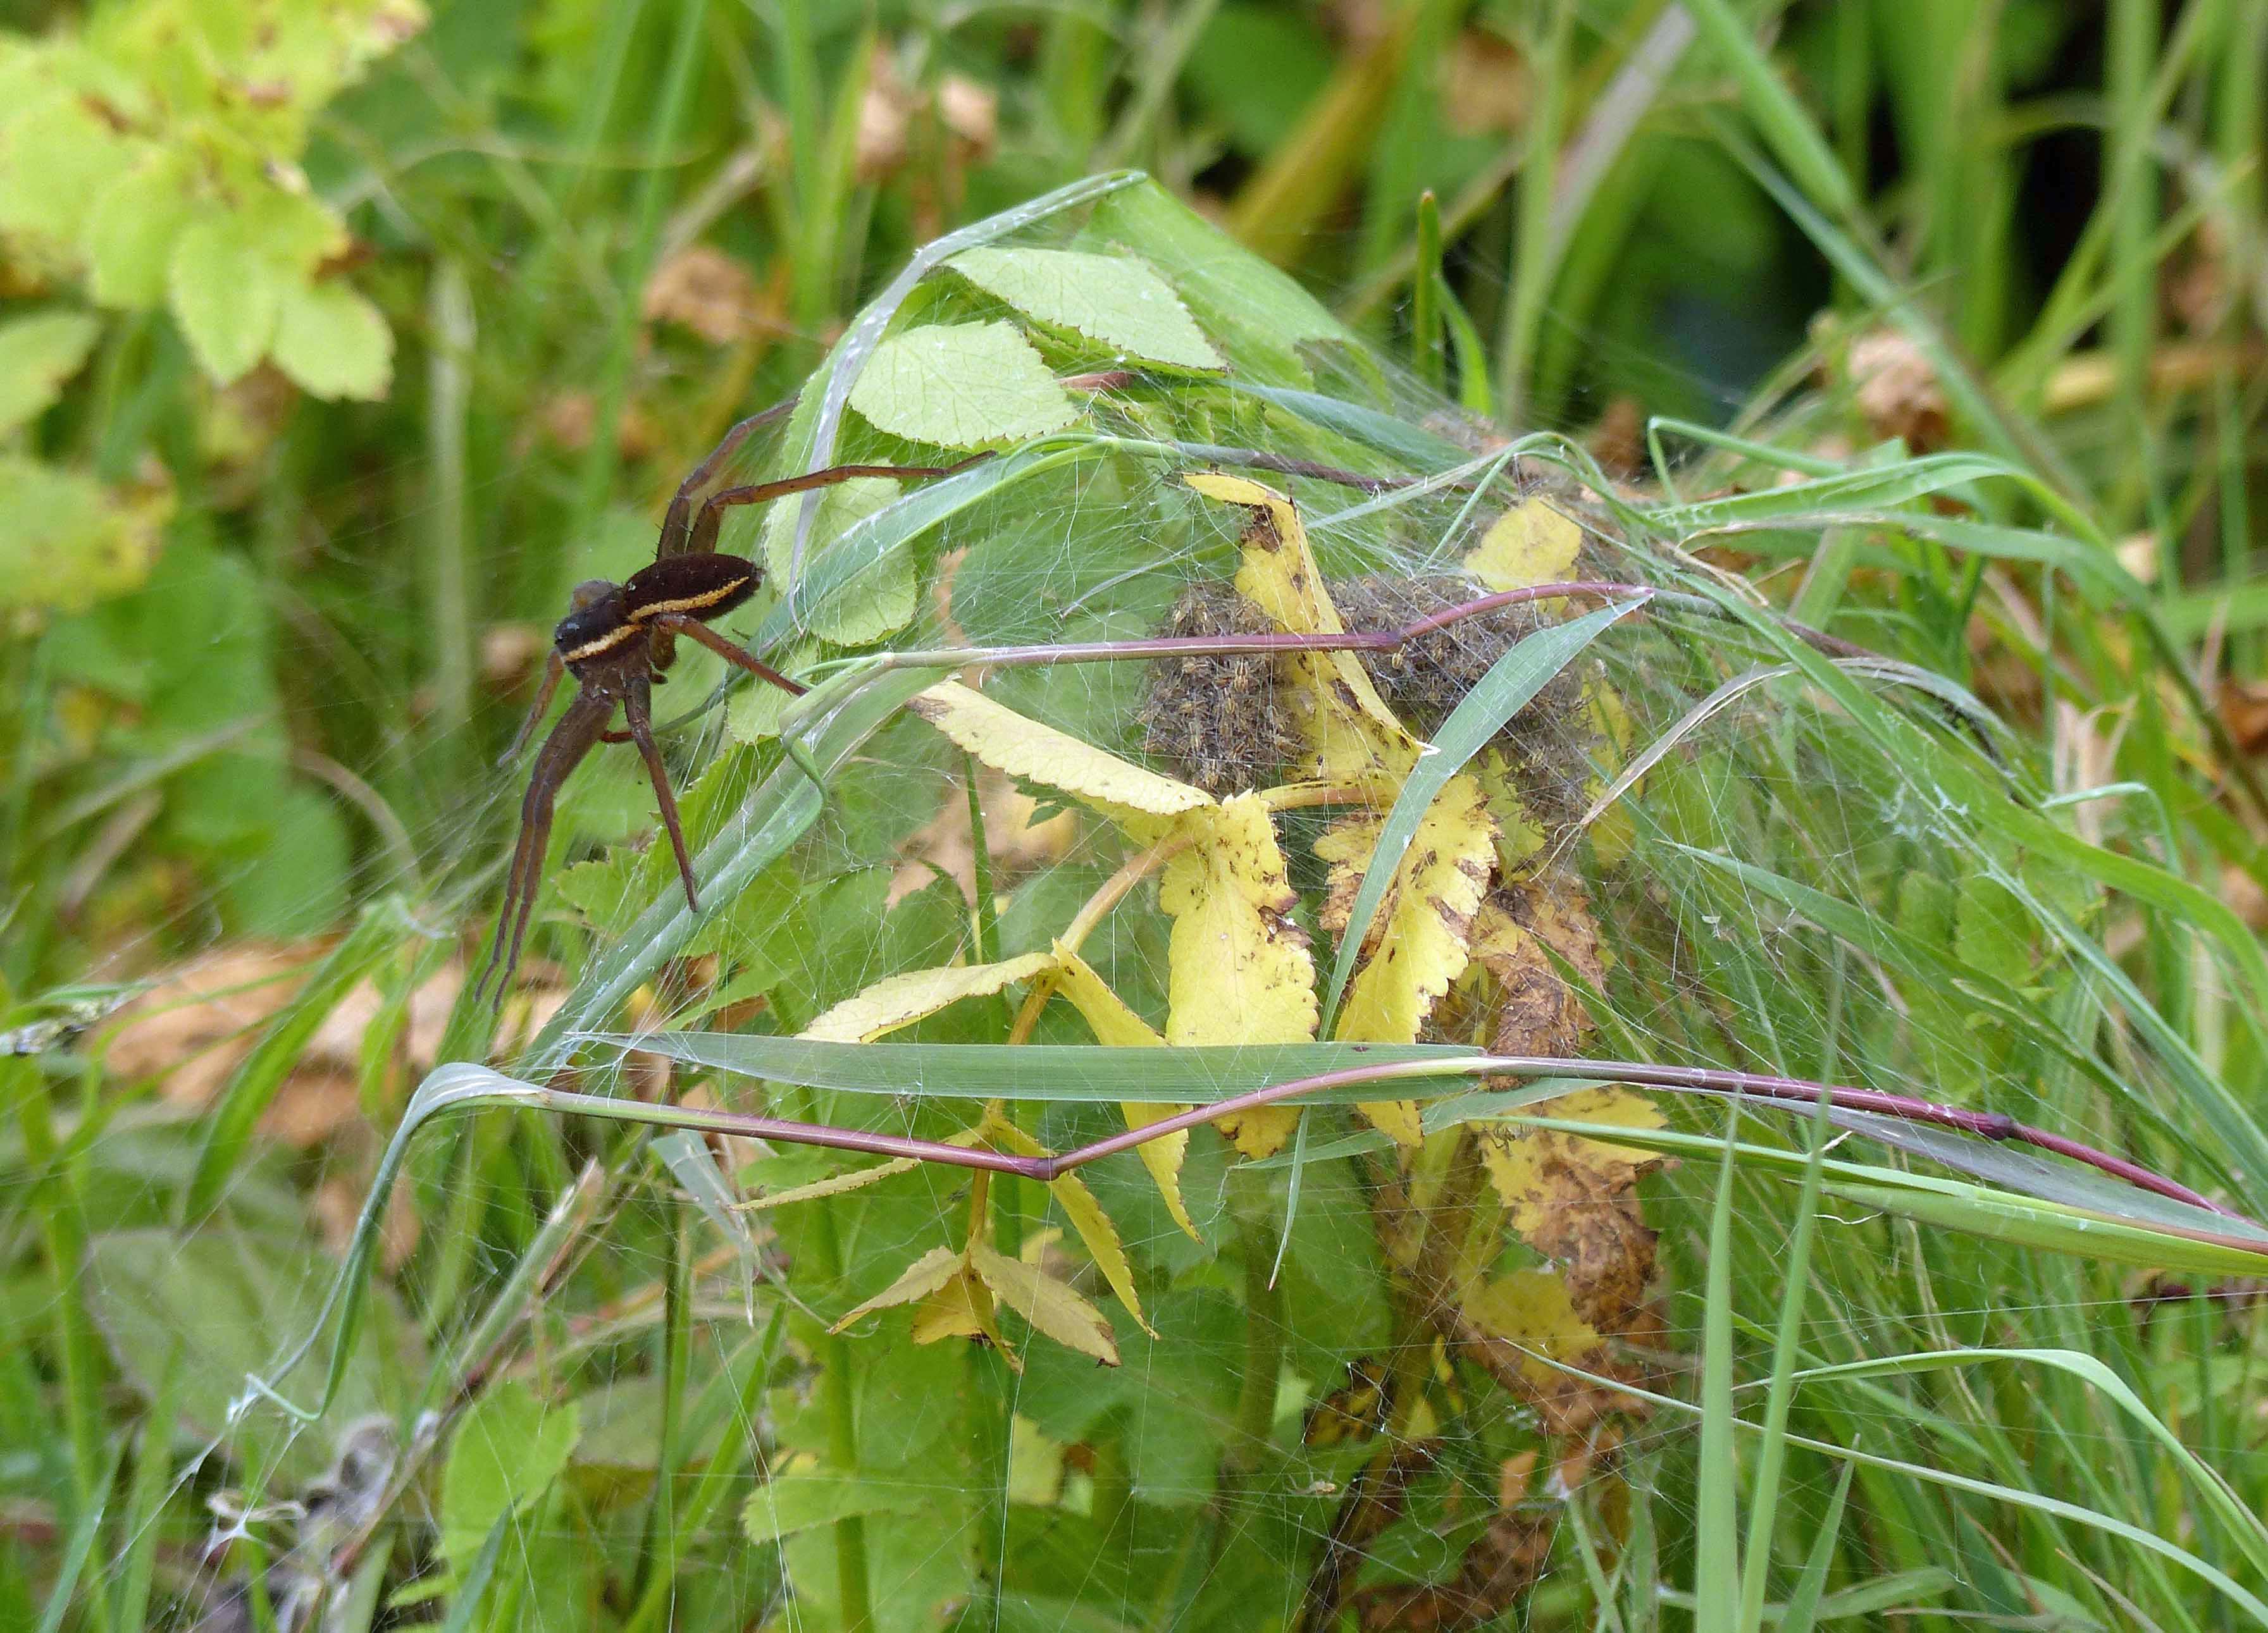 Female Dolomedes plantarius guarding spiderlings in her nursery